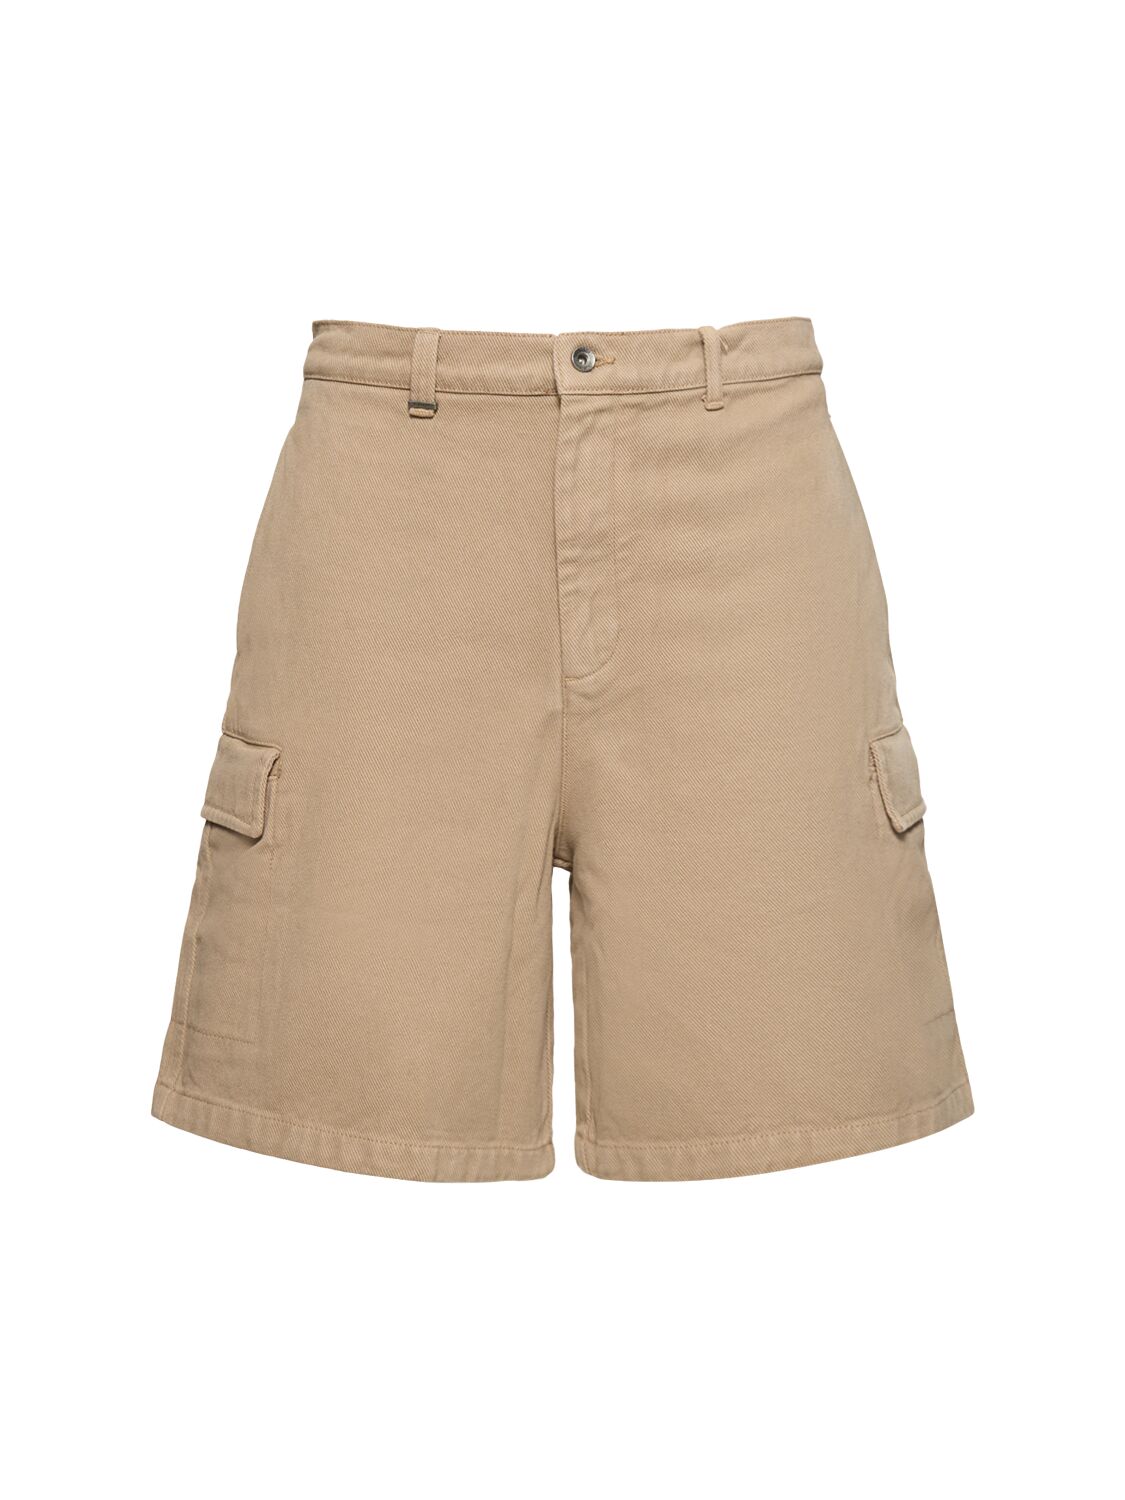 Image of Cotton Cargo Shorts